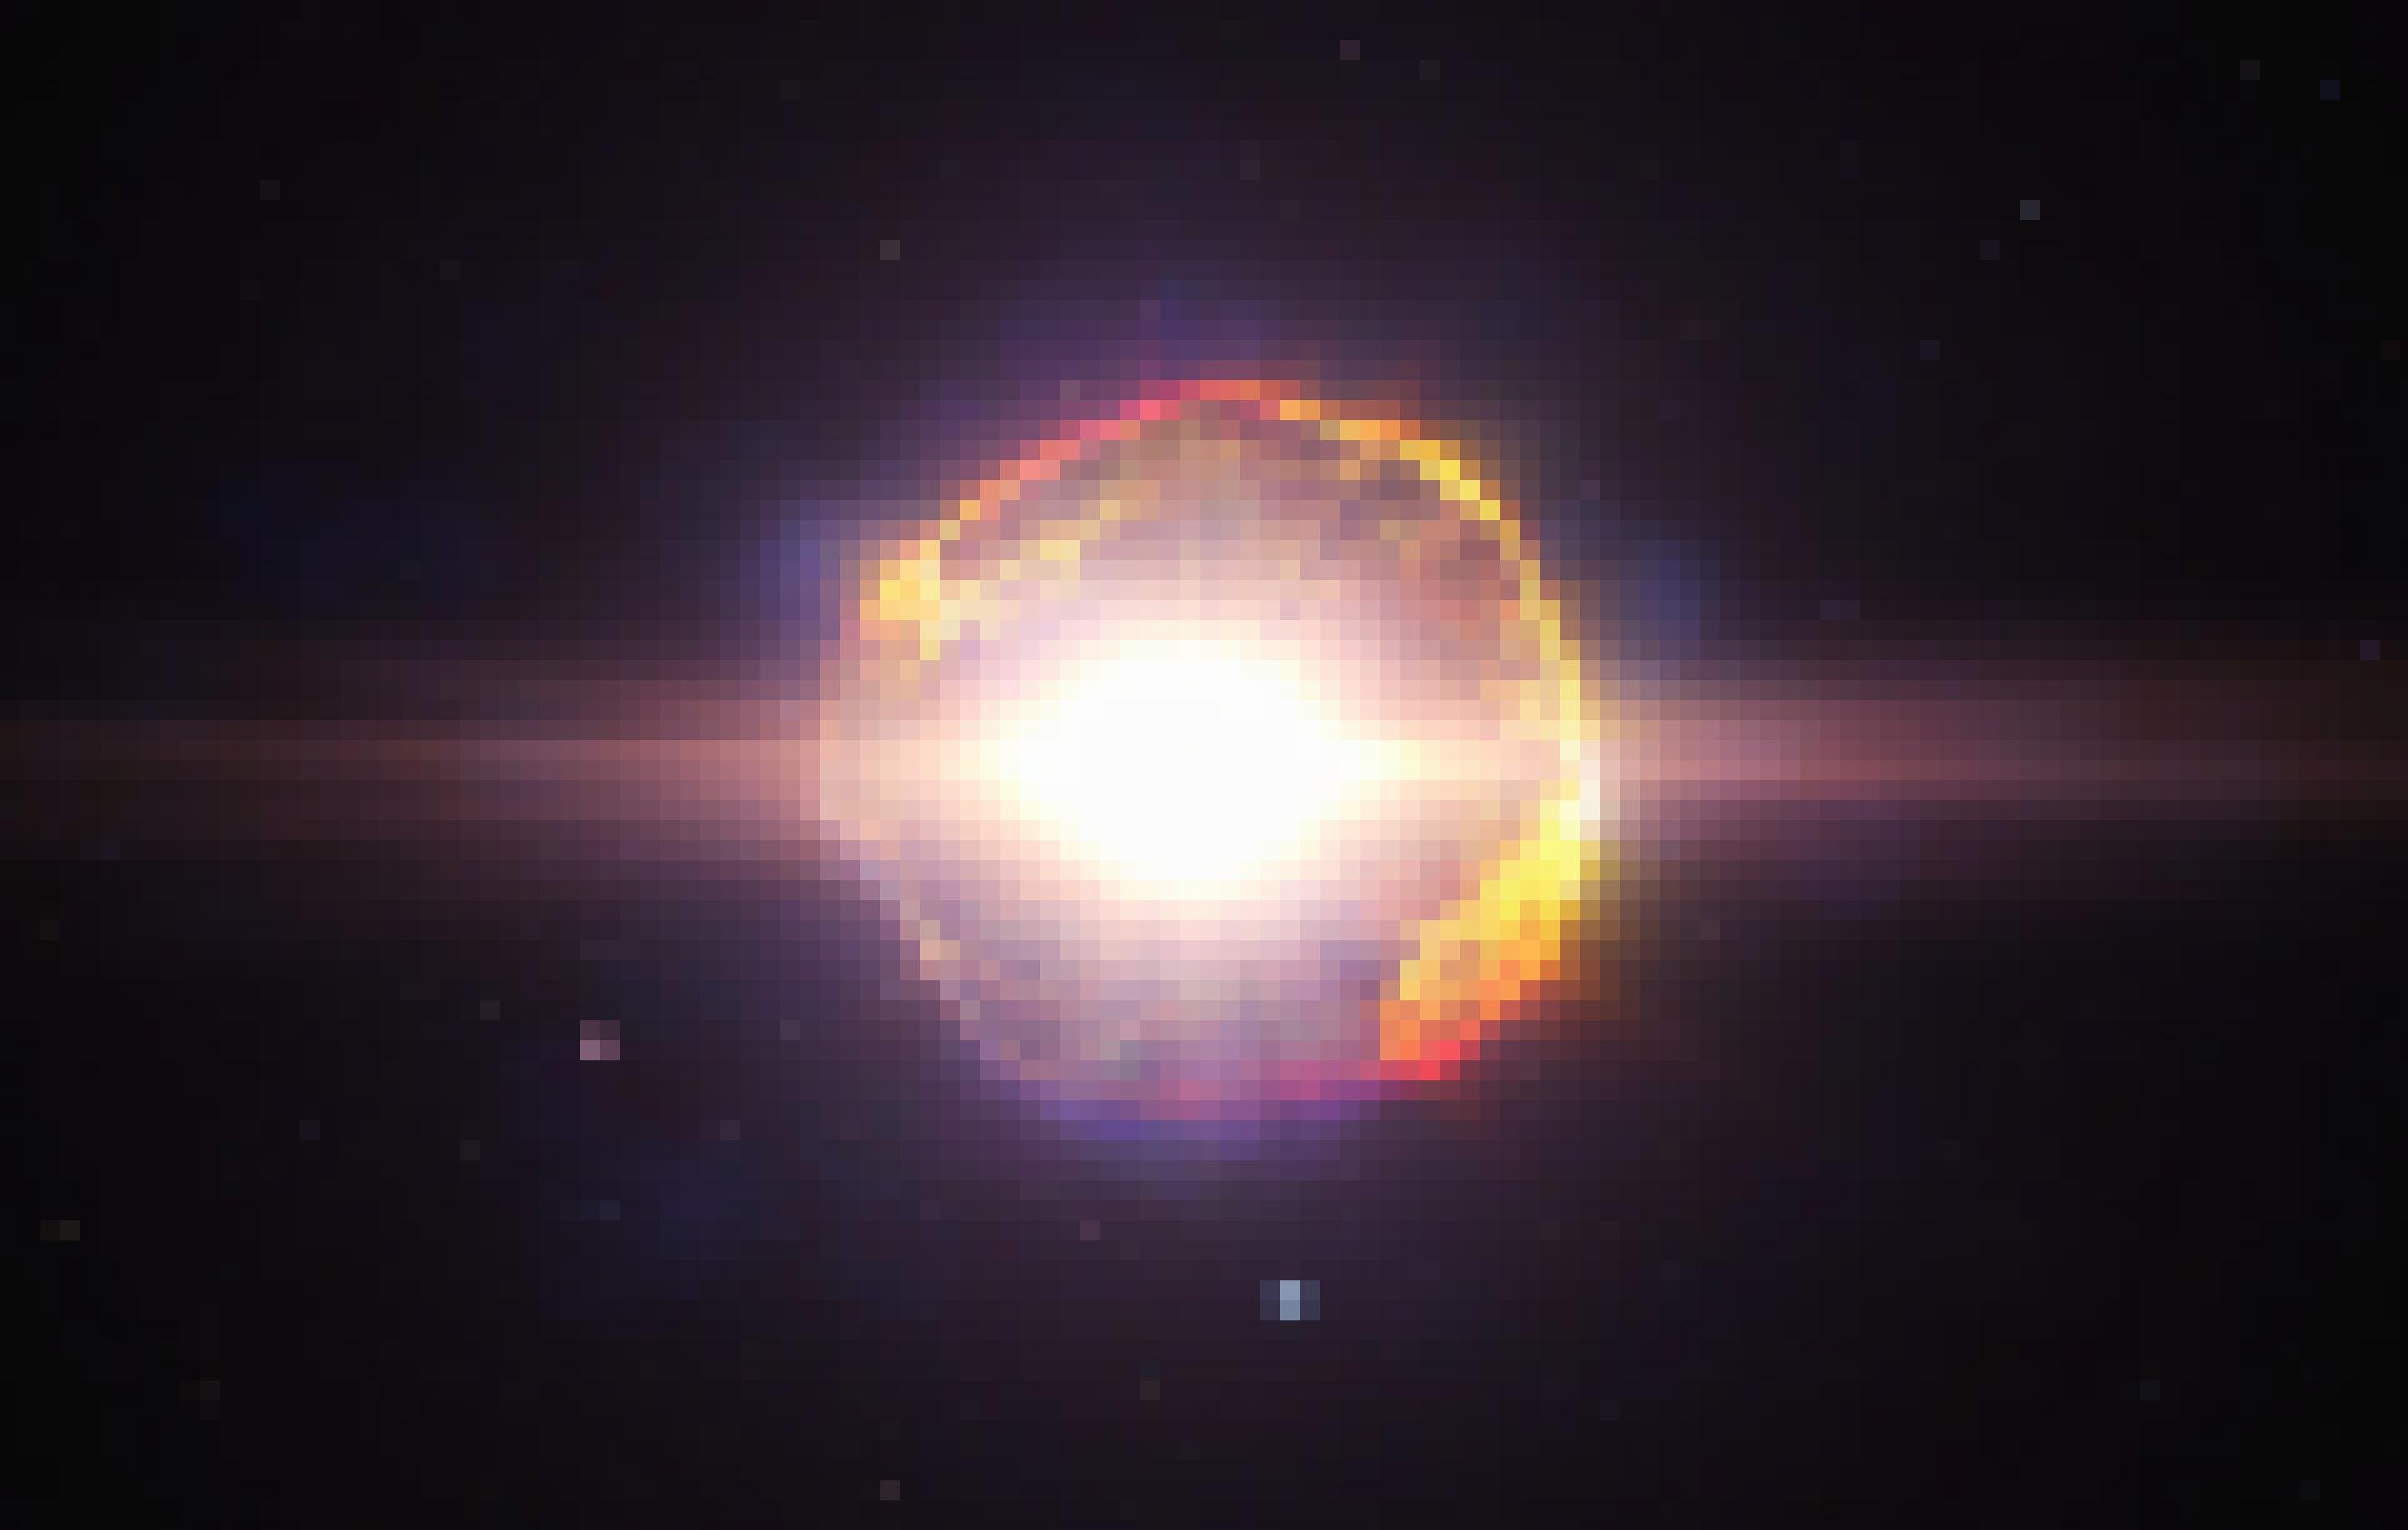 Im Zentrum dieser computeranimierten Darstellung ist ein extrem greller, keisförmiger Lichtblitz zu erkennen: das explodierende Innere einer Supernova. Um diesen Lichtblitz herum sind helle gelbliche und rötliche Materiefetzen zu erkennen, die vom Zentrum wegfliegen – es ist die Hülle des explodierenden Sterns. Die Materie-Reste solcher Supernova-Explosionen vereinigen sich zu Gas- und Staubwolken, aus denen später neue Sterne entstehen können.